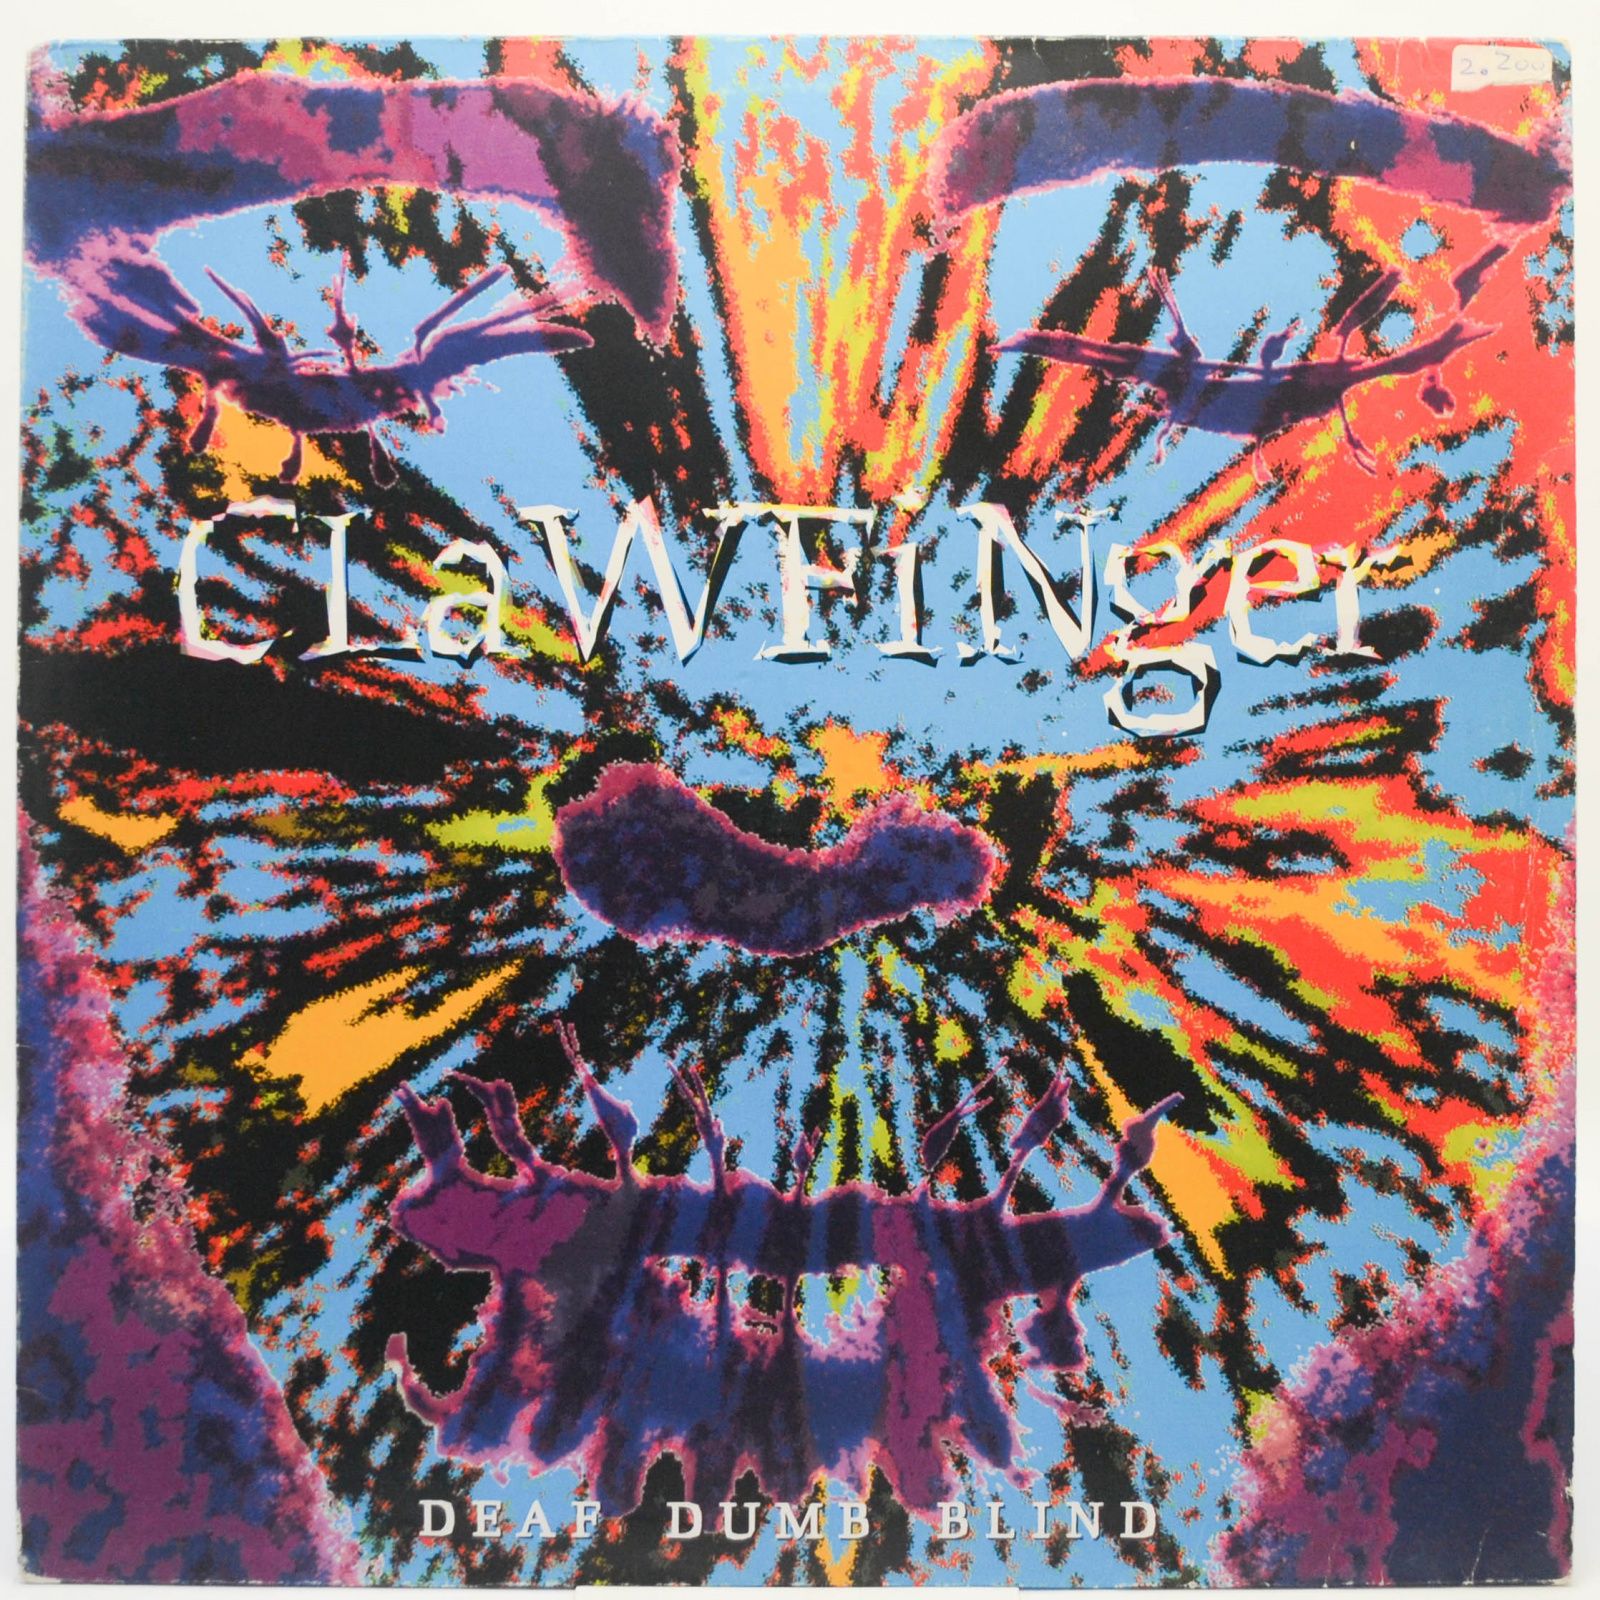 Clawfinger — Deaf Dumb Blind, 1993